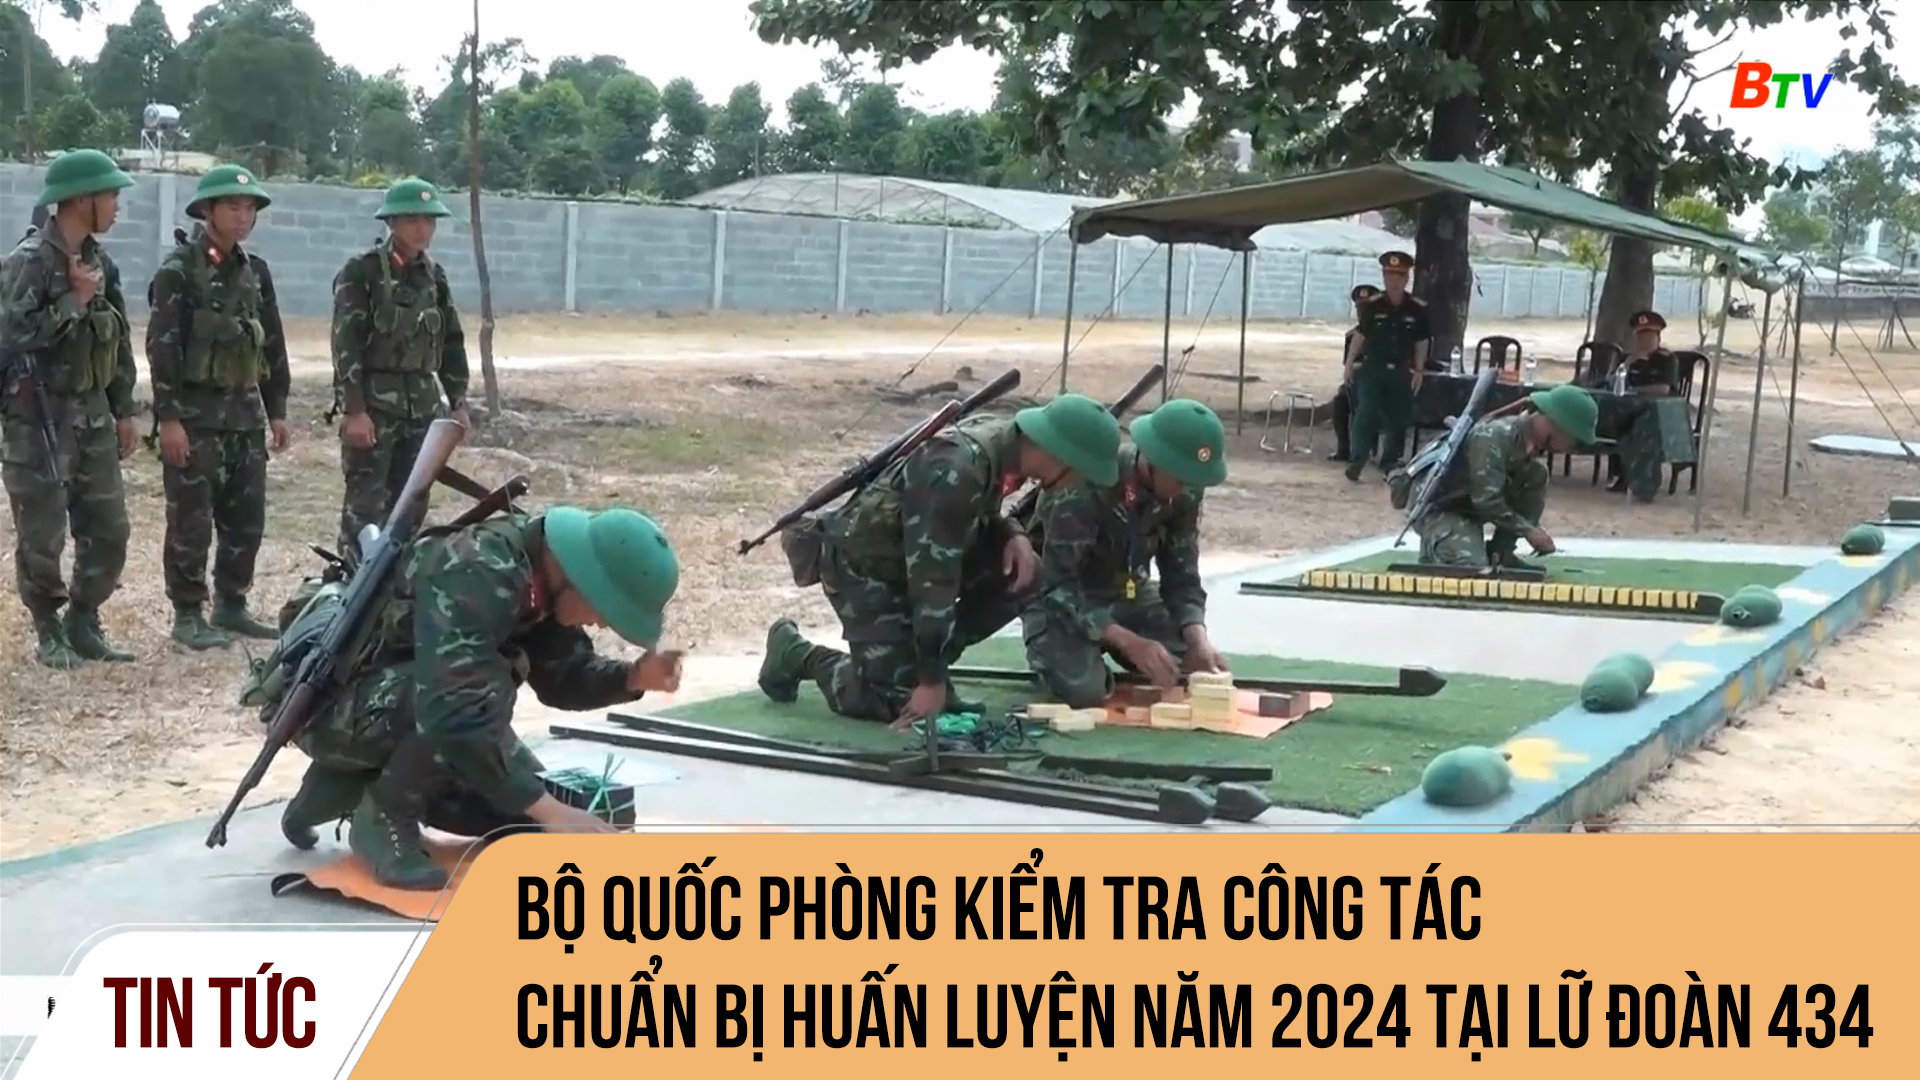 Bộ Quốc phòng kiểm tra công tác chuẩn bị huấn luyện năm 2024 tại Lữ đoàn 434